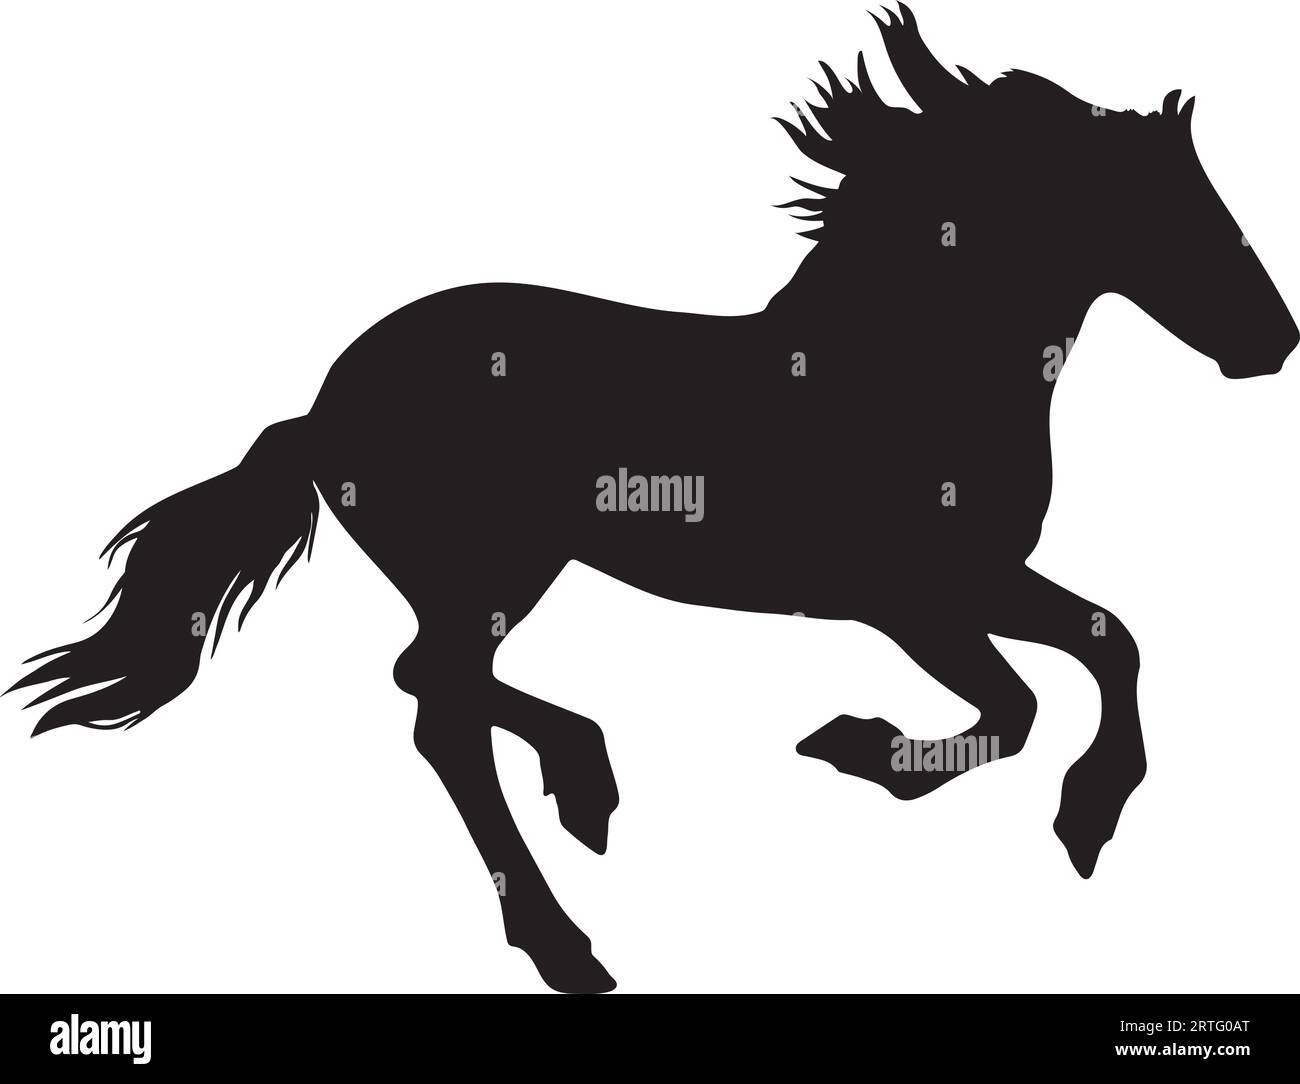 Laufende Silhouette-, Vektor- oder Illustrationsdatei für Pferde Stock Vektor